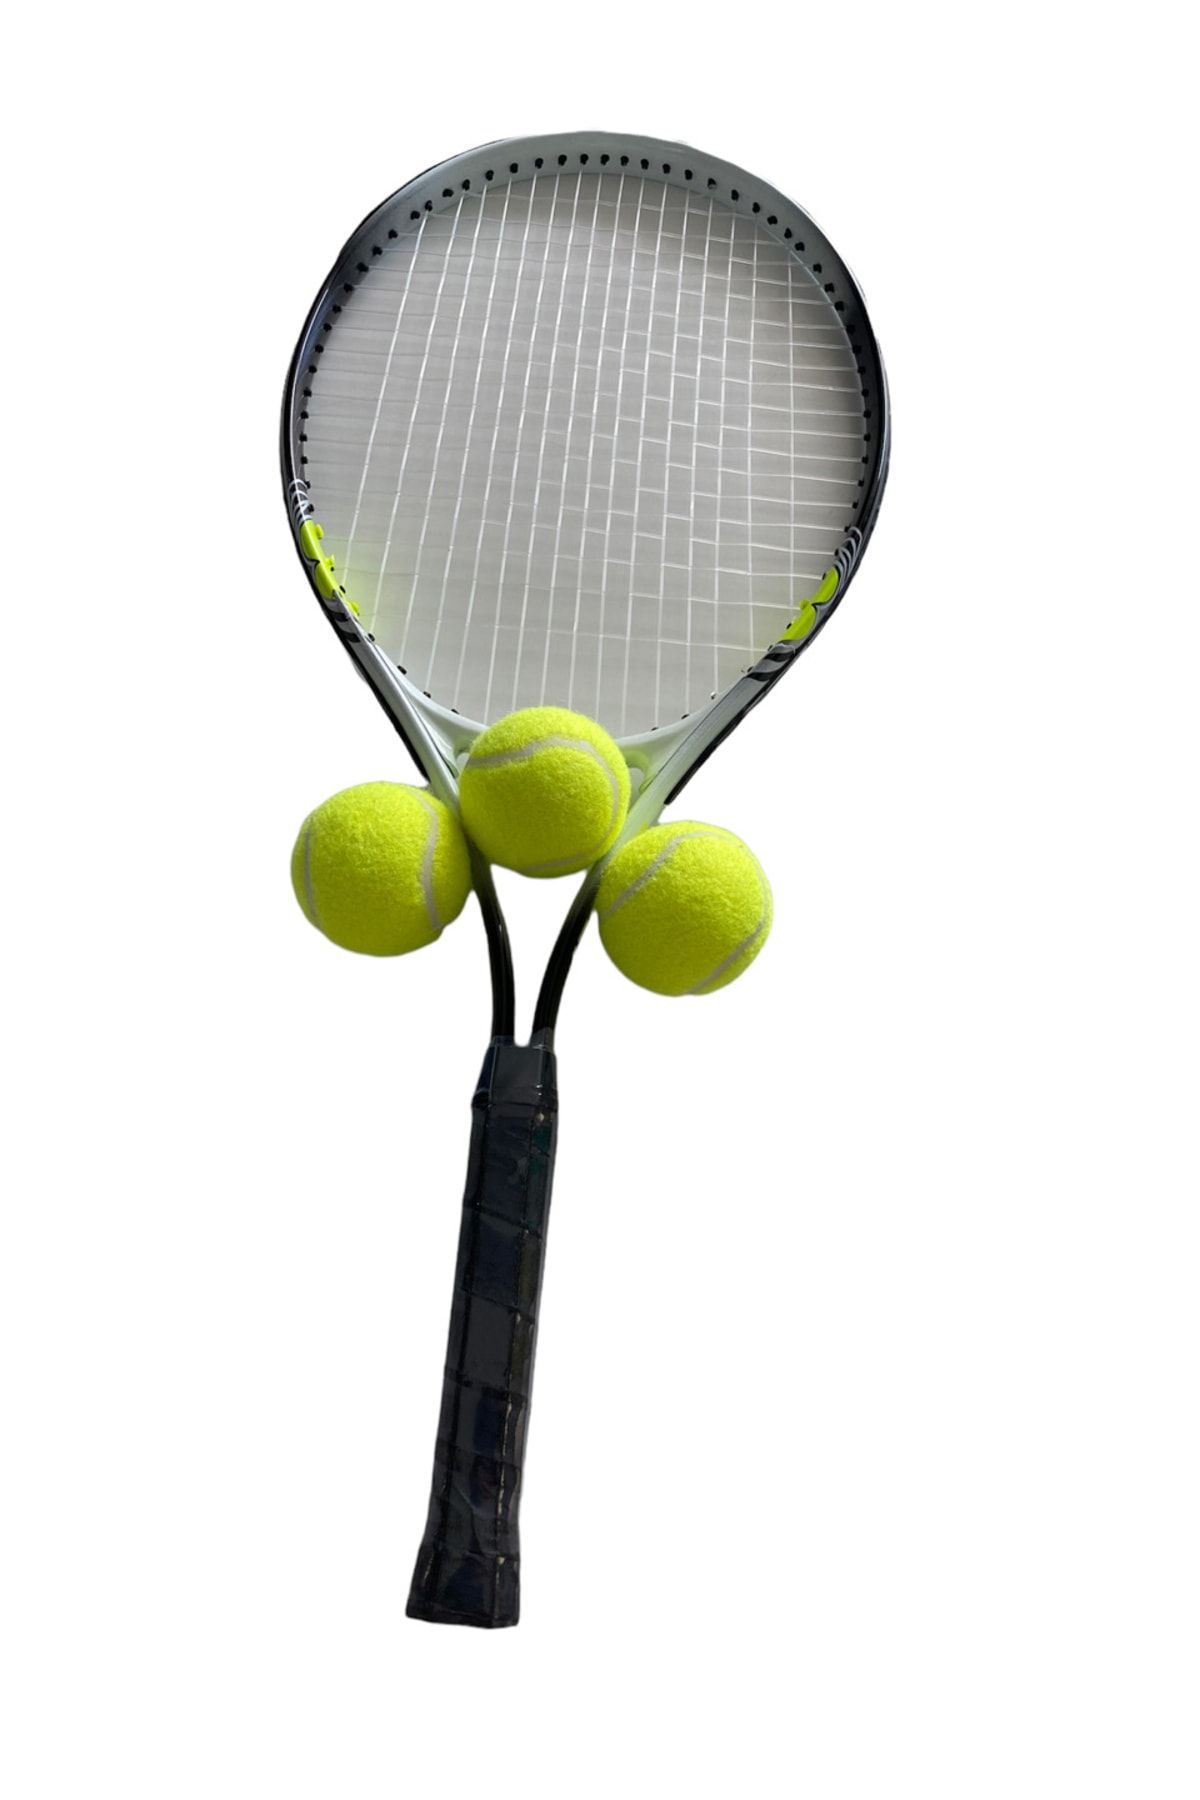 Muba Yetişkin Kort Tenis Raketi Seti Başlangıç Seviye Tenis Raketi Seti + Taşıma Çantası